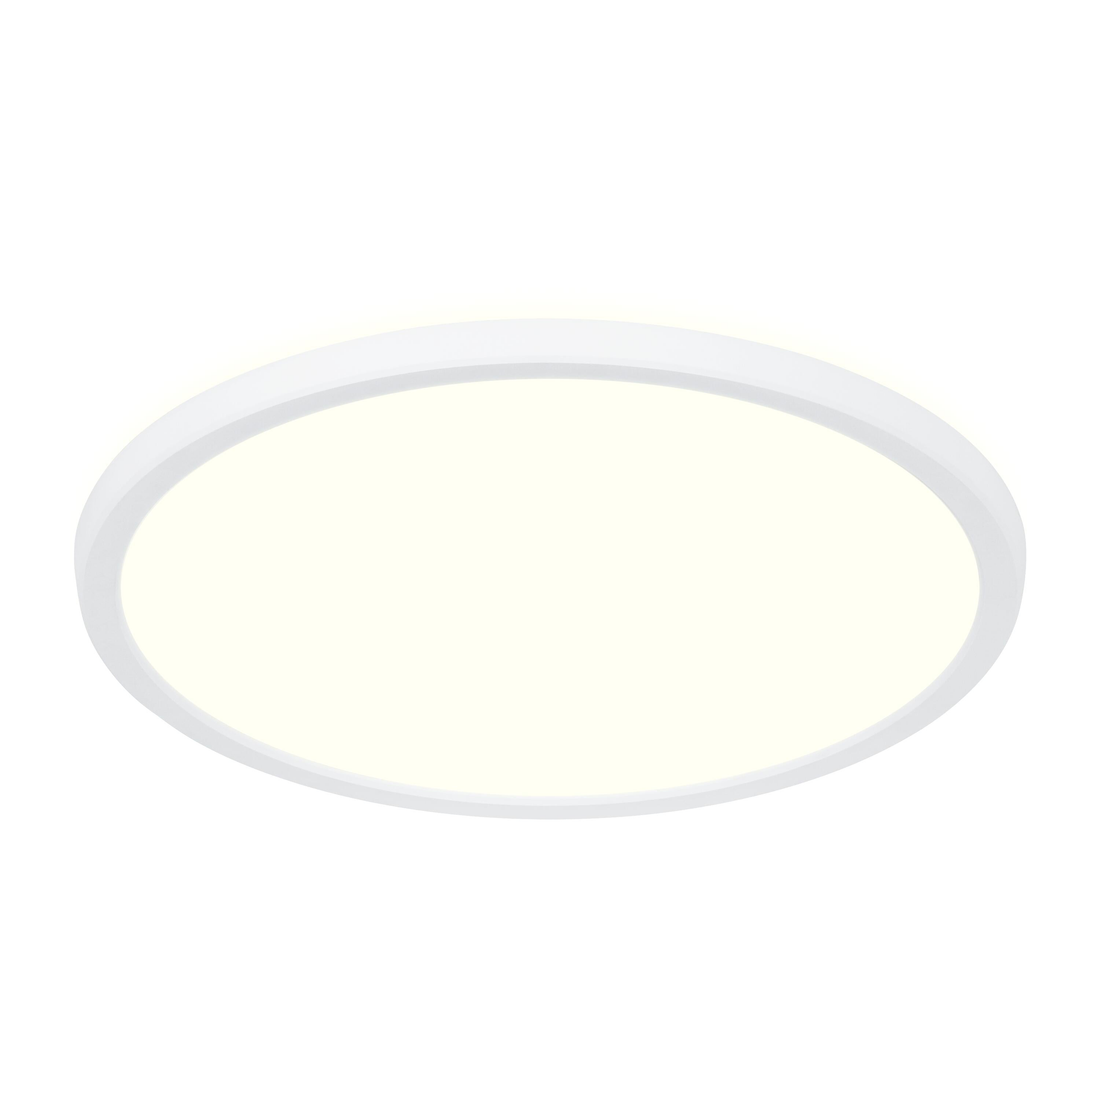 BATHROOM CEILING LIGHT LANO PLASTIC WHITE D 29,4 CM LED 15 W NATURAL LIGHT IP54